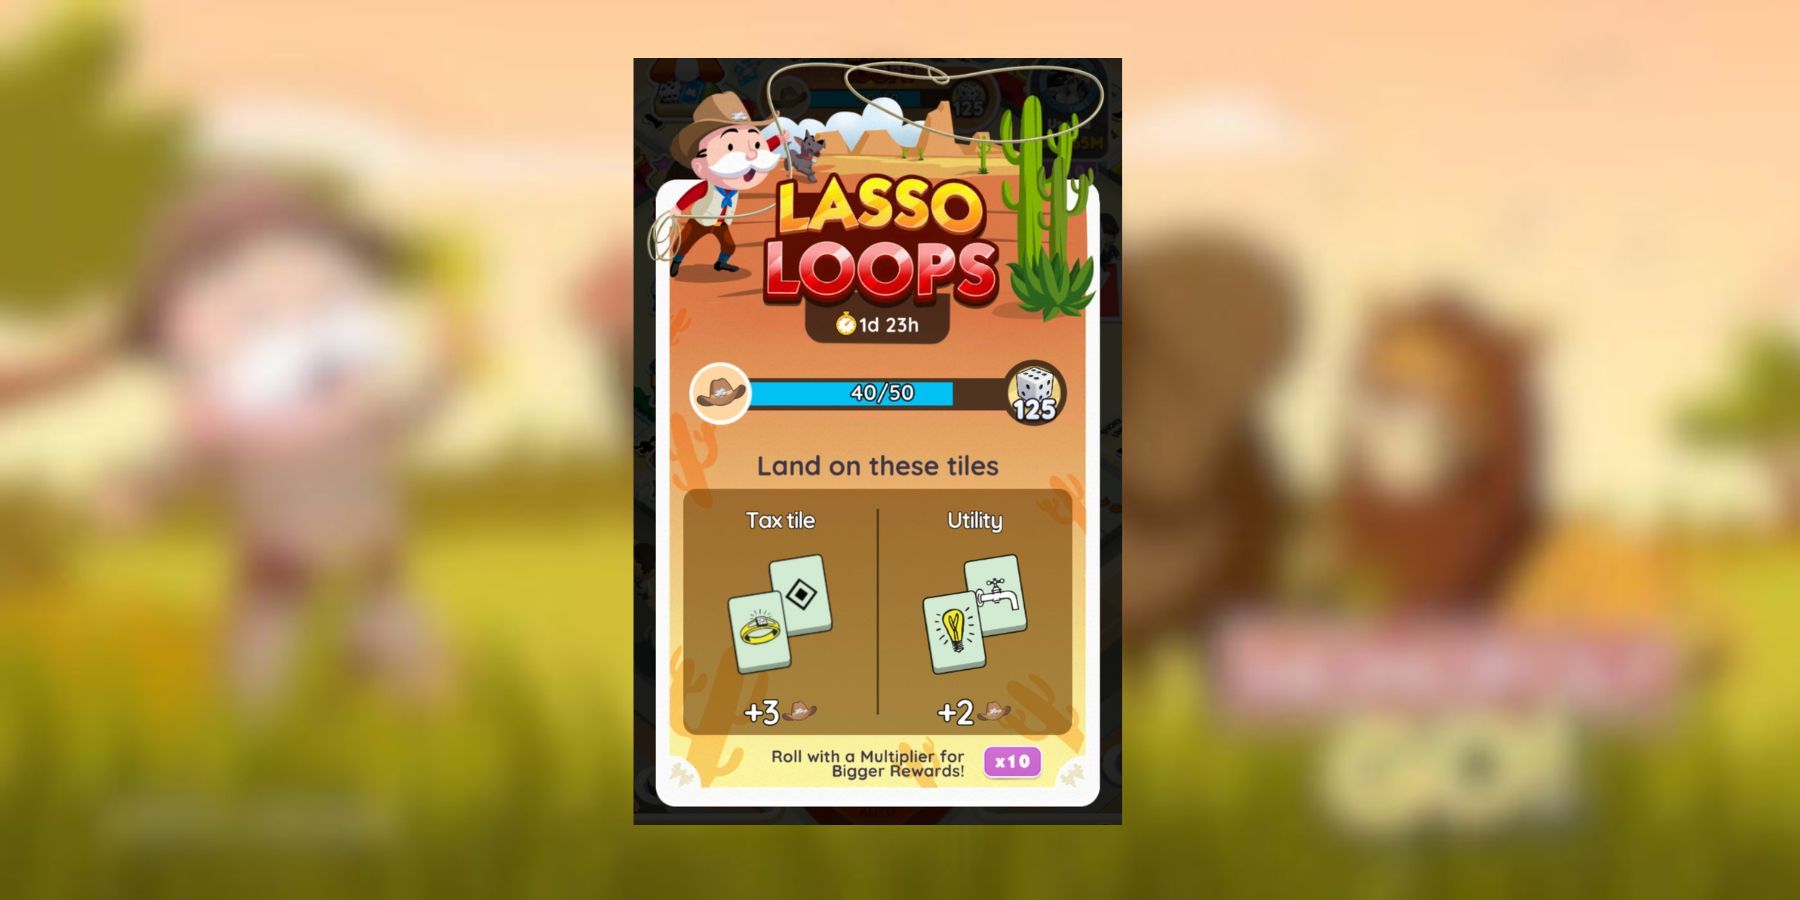 Lasso Loops Rewards